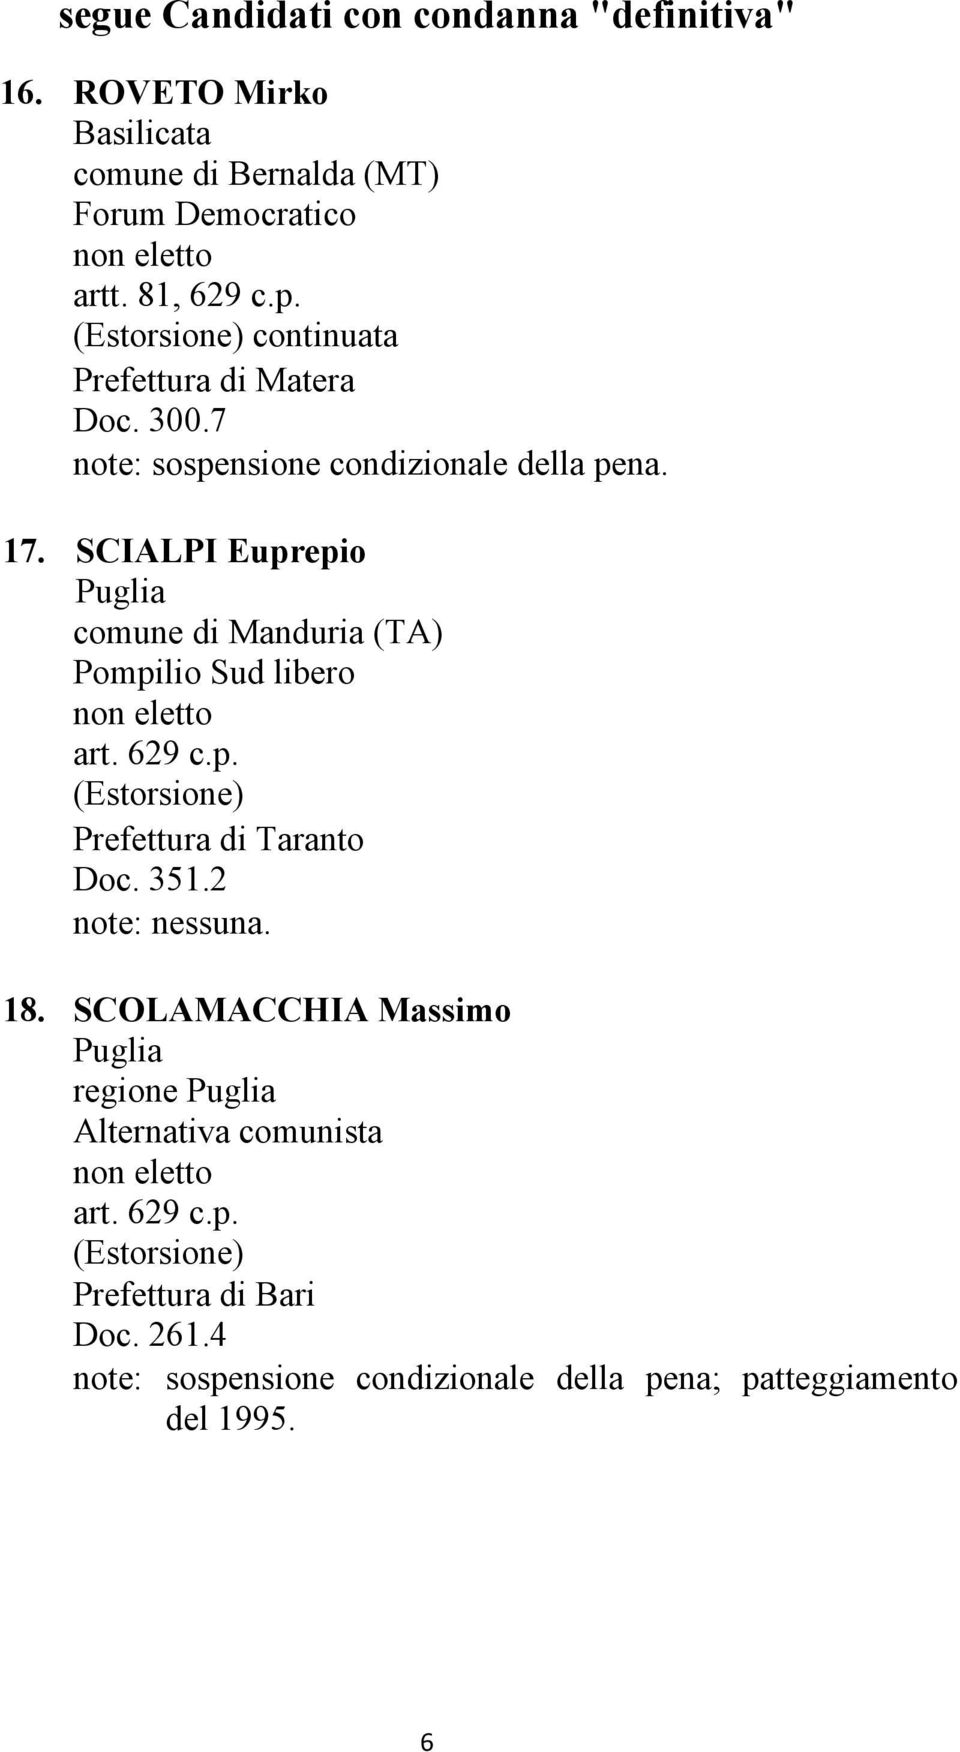 SCIALPI Euprepio comune di Manduria (TA) Pompilio Sud libero Prefettura di Taranto Doc. 351.2 18.